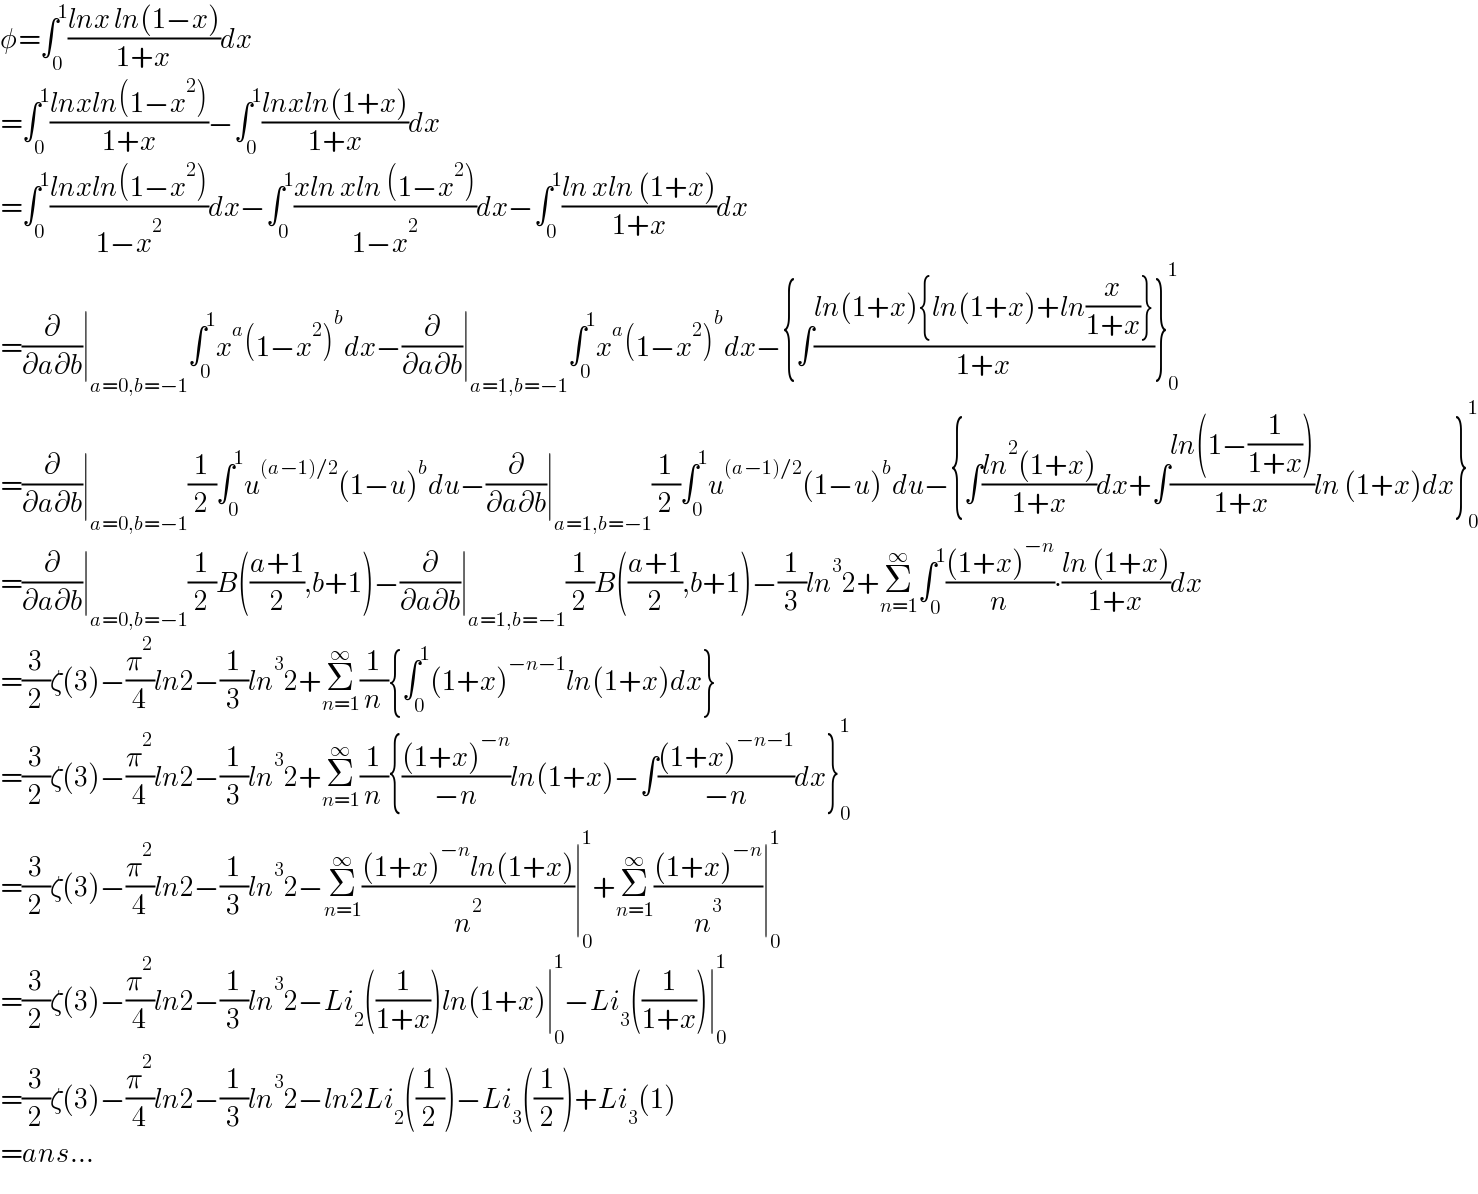 φ=∫_0 ^1 ((lnx ln(1−x))/(1+x))dx  =∫_0 ^1 ((lnxln(1−x^2 ))/(1+x))−∫_0 ^1 ((lnxln(1+x))/(1+x))dx  =∫_0 ^1 ((lnxln(1−x^2 ))/(1−x^2 ))dx−∫_0 ^1 ((xln xln (1−x^2 ))/(1−x^2 ))dx−∫_0 ^1 ((ln xln (1+x))/(1+x))dx  =(∂/(∂a∂b))∣_(a=0,b=−1) ∫_0 ^1 x^a (1−x^2 )^b dx−(∂/(∂a∂b))∣_(a=1,b=−1) ∫_0 ^1 x^a (1−x^2 )^b dx−{∫((ln(1+x){ln(1+x)+ln(x/(1+x))})/(1+x))}_0 ^1   =(∂/(∂a∂b))∣_(a=0,b=−1) (1/2)∫_0 ^1 u^((a−1)/2) (1−u)^b du−(∂/(∂a∂b))∣_(a=1,b=−1) (1/2)∫_0 ^1 u^((a−1)/2) (1−u)^b du−{∫((ln^2 (1+x))/(1+x))dx+∫((ln(1−(1/(1+x))))/(1+x))ln (1+x)dx}_0 ^1   =(∂/(∂a∂b))∣_(a=0,b=−1) (1/2)B(((a+1)/2),b+1)−(∂/(∂a∂b))∣_(a=1,b=−1) (1/2)B(((a+1)/2),b+1)−(1/3)ln^3 2+Σ_(n=1) ^∞ ∫_0 ^1 (((1+x)^(−n) )/n)∙((ln (1+x))/(1+x))dx  =(3/2)ζ(3)−(π^2 /4)ln2−(1/3)ln^3 2+Σ_(n=1) ^∞ (1/n){∫_0 ^1 (1+x)^(−n−1) ln(1+x)dx}  =(3/2)ζ(3)−(π^2 /4)ln2−(1/3)ln^3 2+Σ_(n=1) ^∞ (1/n){(((1+x)^(−n) )/(−n))ln(1+x)−∫(((1+x)^(−n−1) )/(−n))dx}_0 ^1   =(3/2)ζ(3)−(π^2 /4)ln2−(1/3)ln^3 2−Σ_(n=1) ^∞ (((1+x)^(−n) ln(1+x))/n^2 )∣_0 ^1 +Σ_(n=1) ^∞ (((1+x)^(−n) )/n^3 )∣_0 ^1   =(3/2)ζ(3)−(π^2 /4)ln2−(1/3)ln^3 2−Li_2 ((1/(1+x)))ln(1+x)∣_0 ^1 −Li_3 ((1/(1+x)))∣_0 ^1   =(3/2)ζ(3)−(π^2 /4)ln2−(1/3)ln^3 2−ln2Li_2 ((1/2))−Li_3 ((1/2))+Li_3 (1)  =ans...  